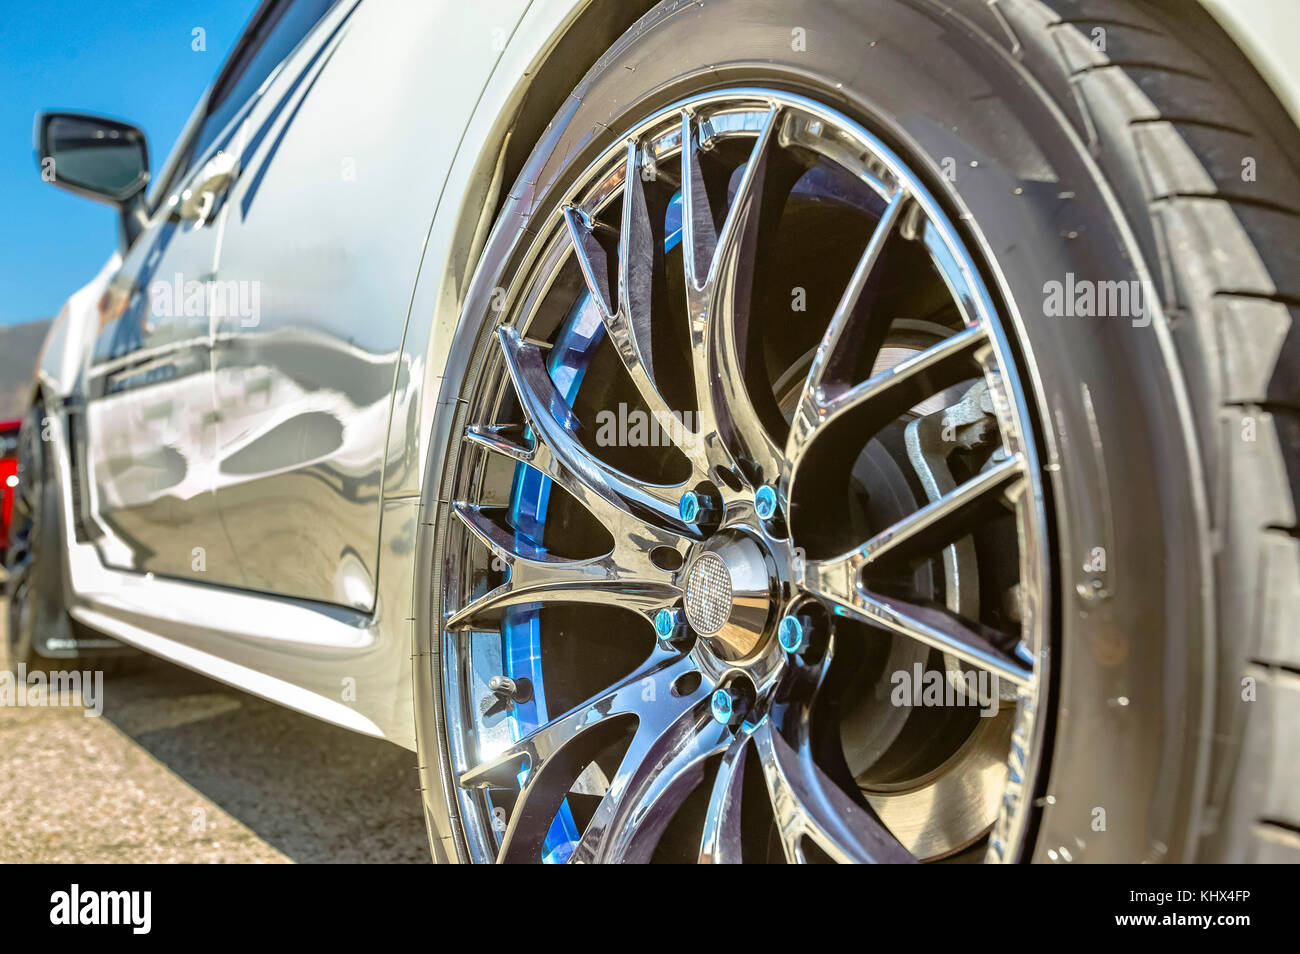 In der Nähe des Auto Felgen, Räder ohne Emblem Chrom Felgen und blauen  Schrauben auf ein weißes Auto Autos in Südkalifornien von Ereignis des  Tages Stockfotografie - Alamy